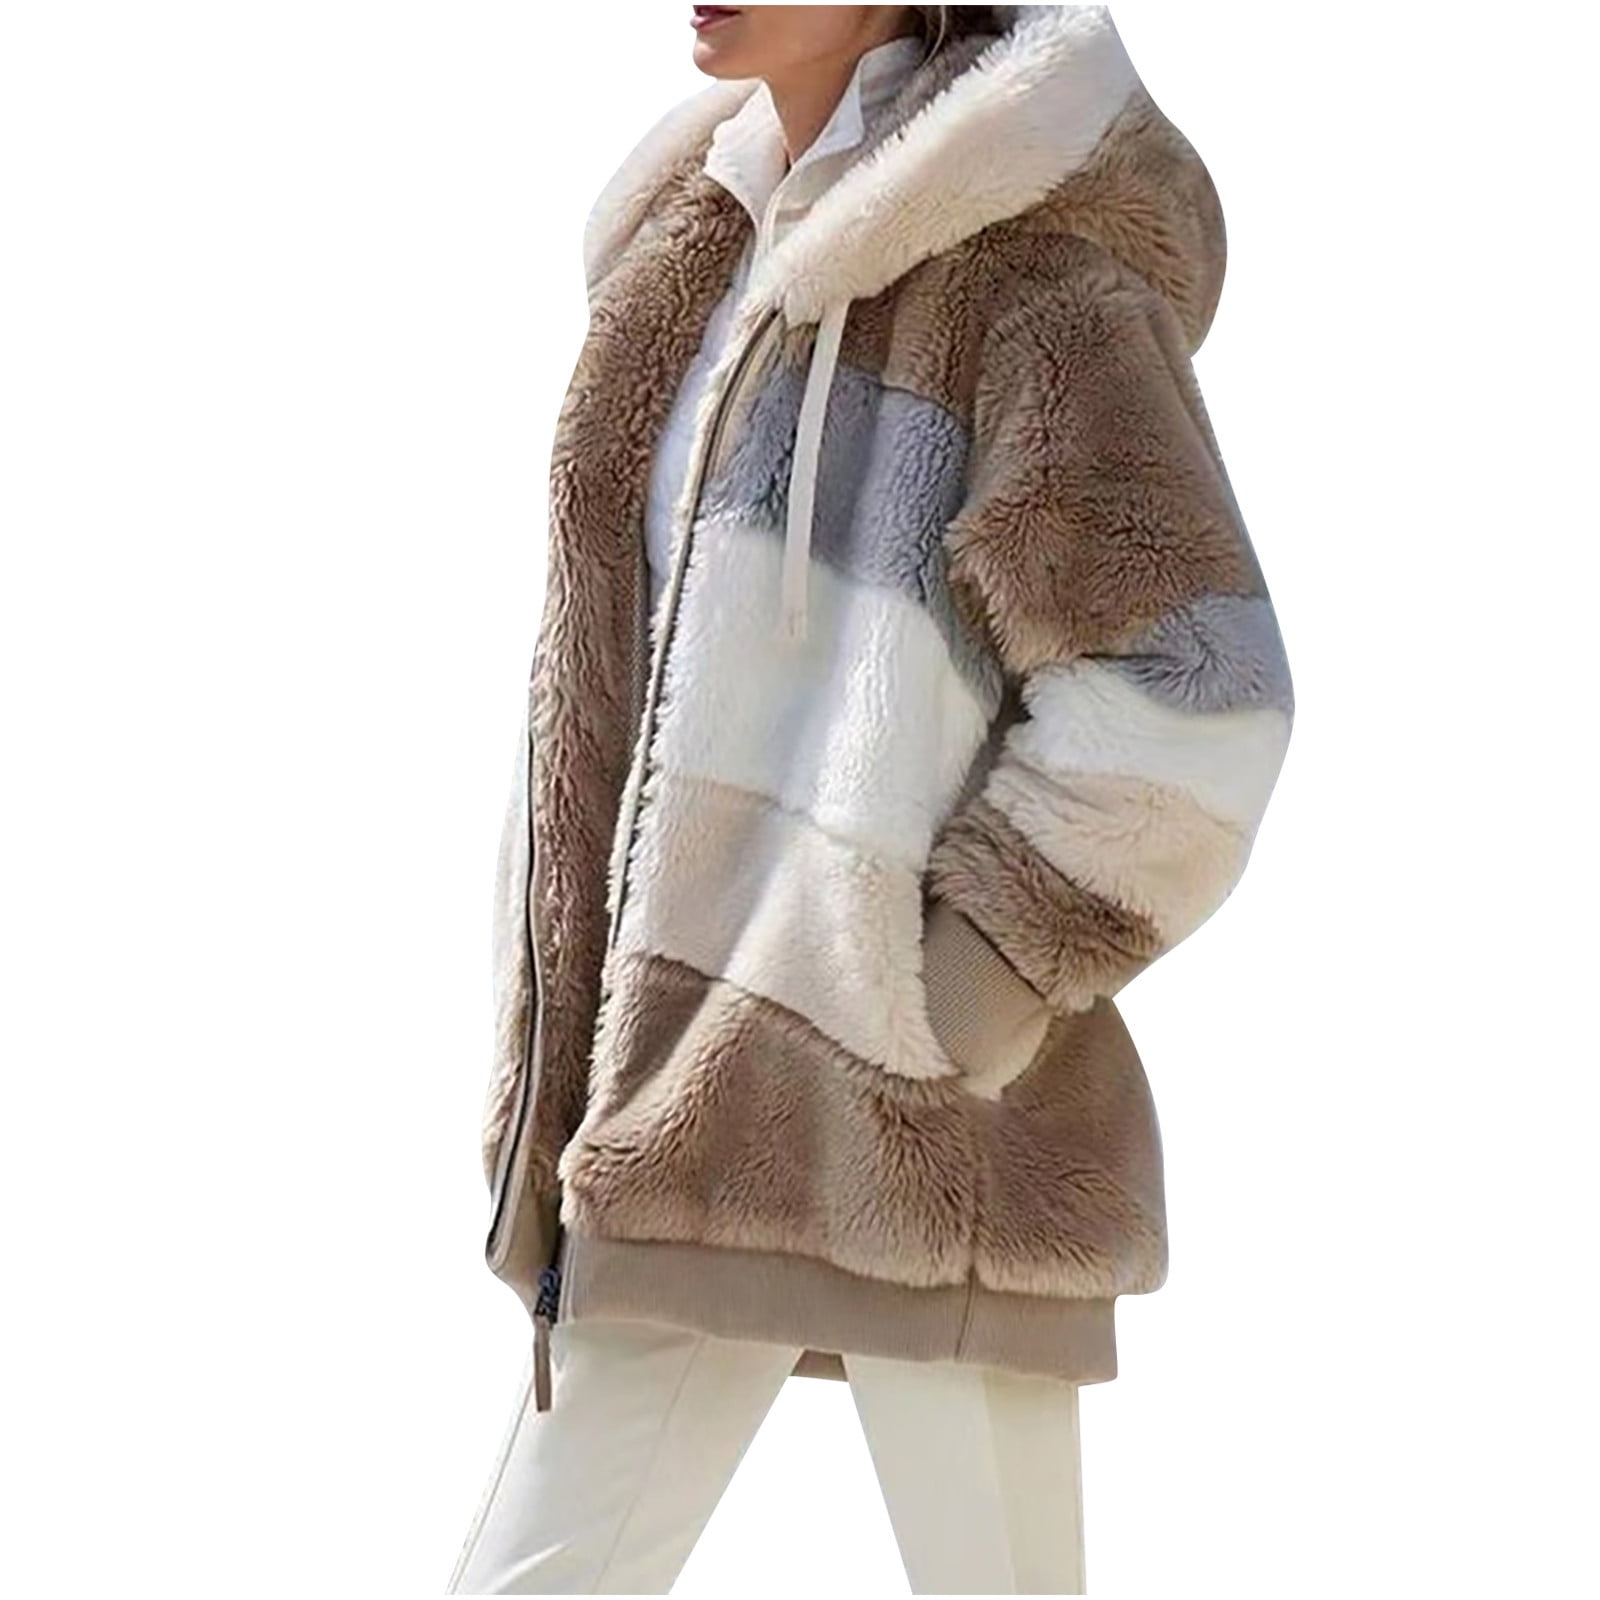 Women's Jacket Outwear Winter Tops Plush Cardigan Long Fleece Coat Parka Warm